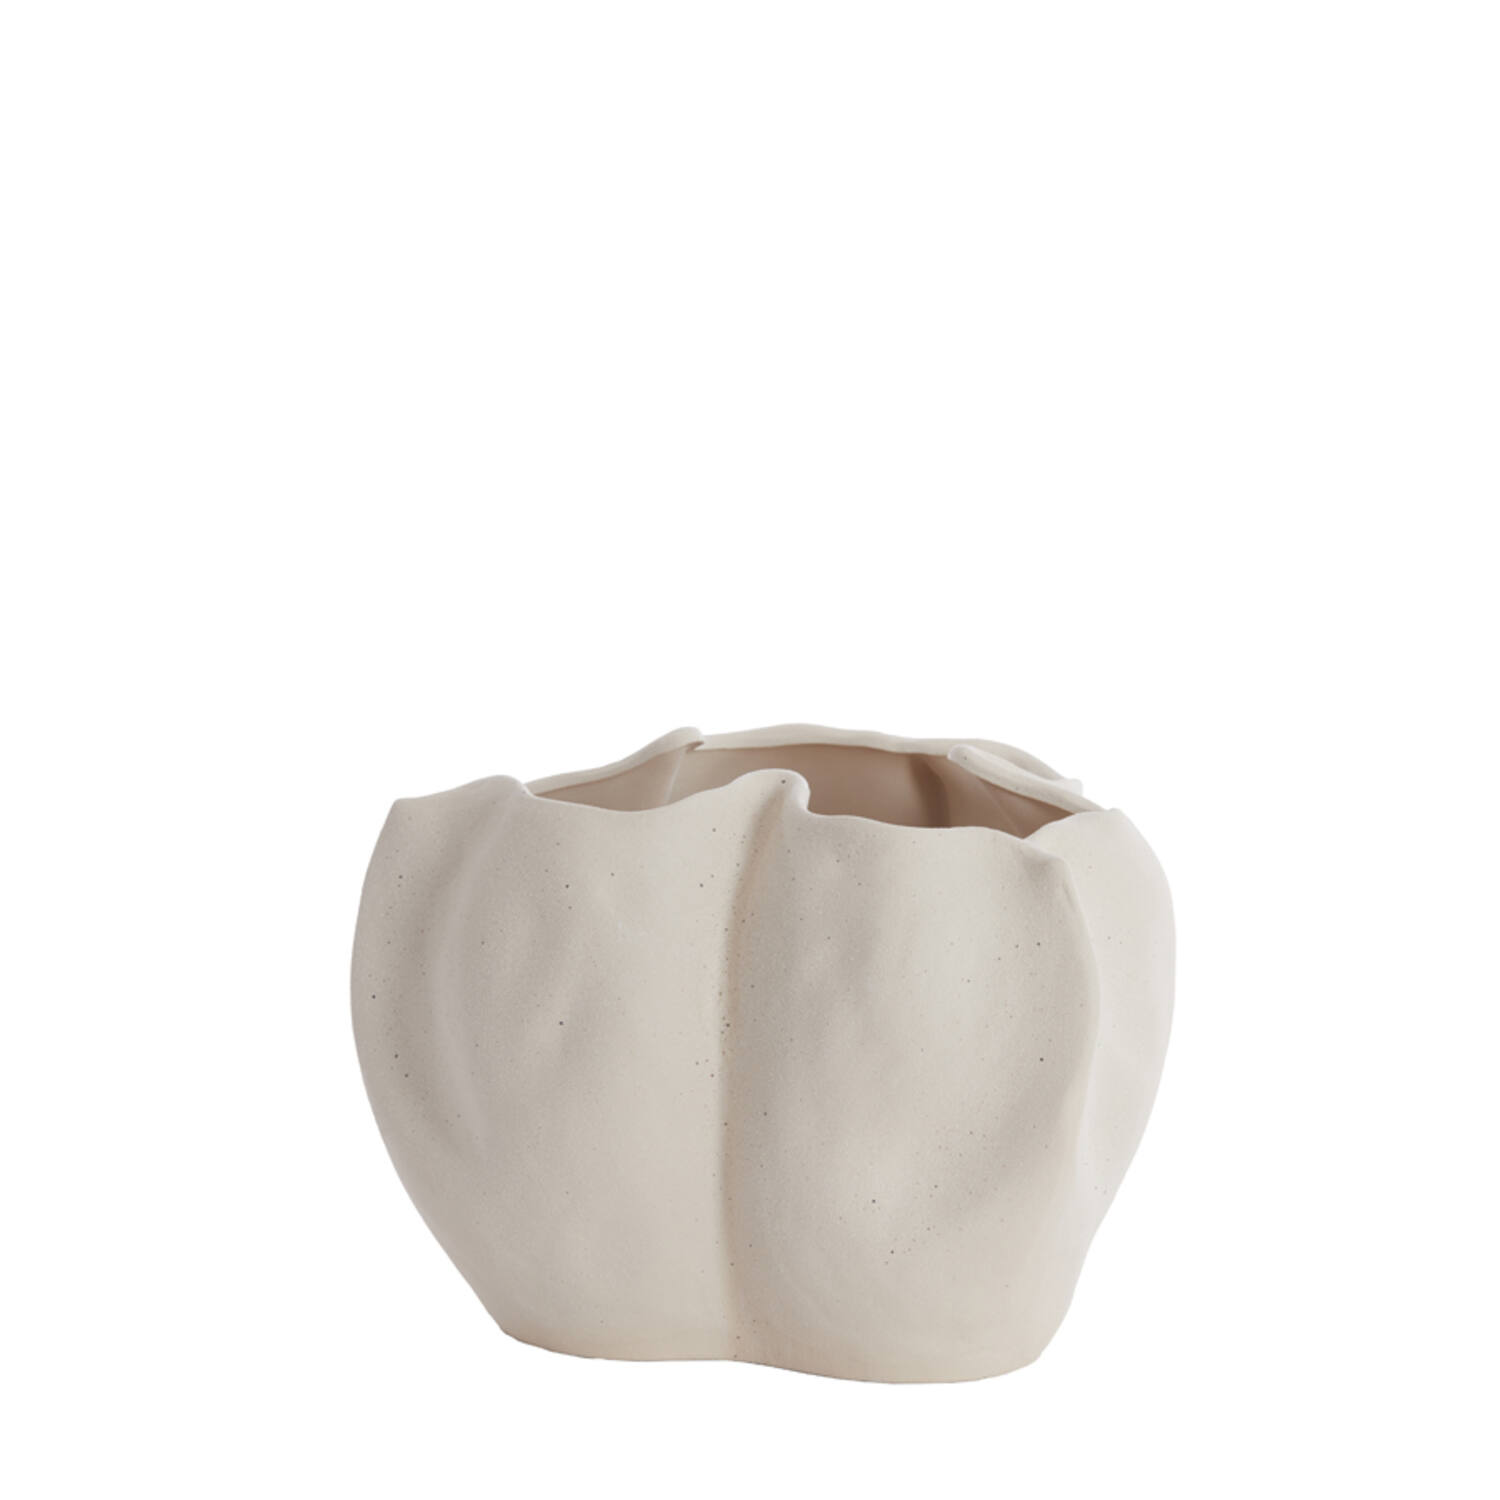 Vase Sanguli Cream Ceramic 33,5xh22,5cm 5882726